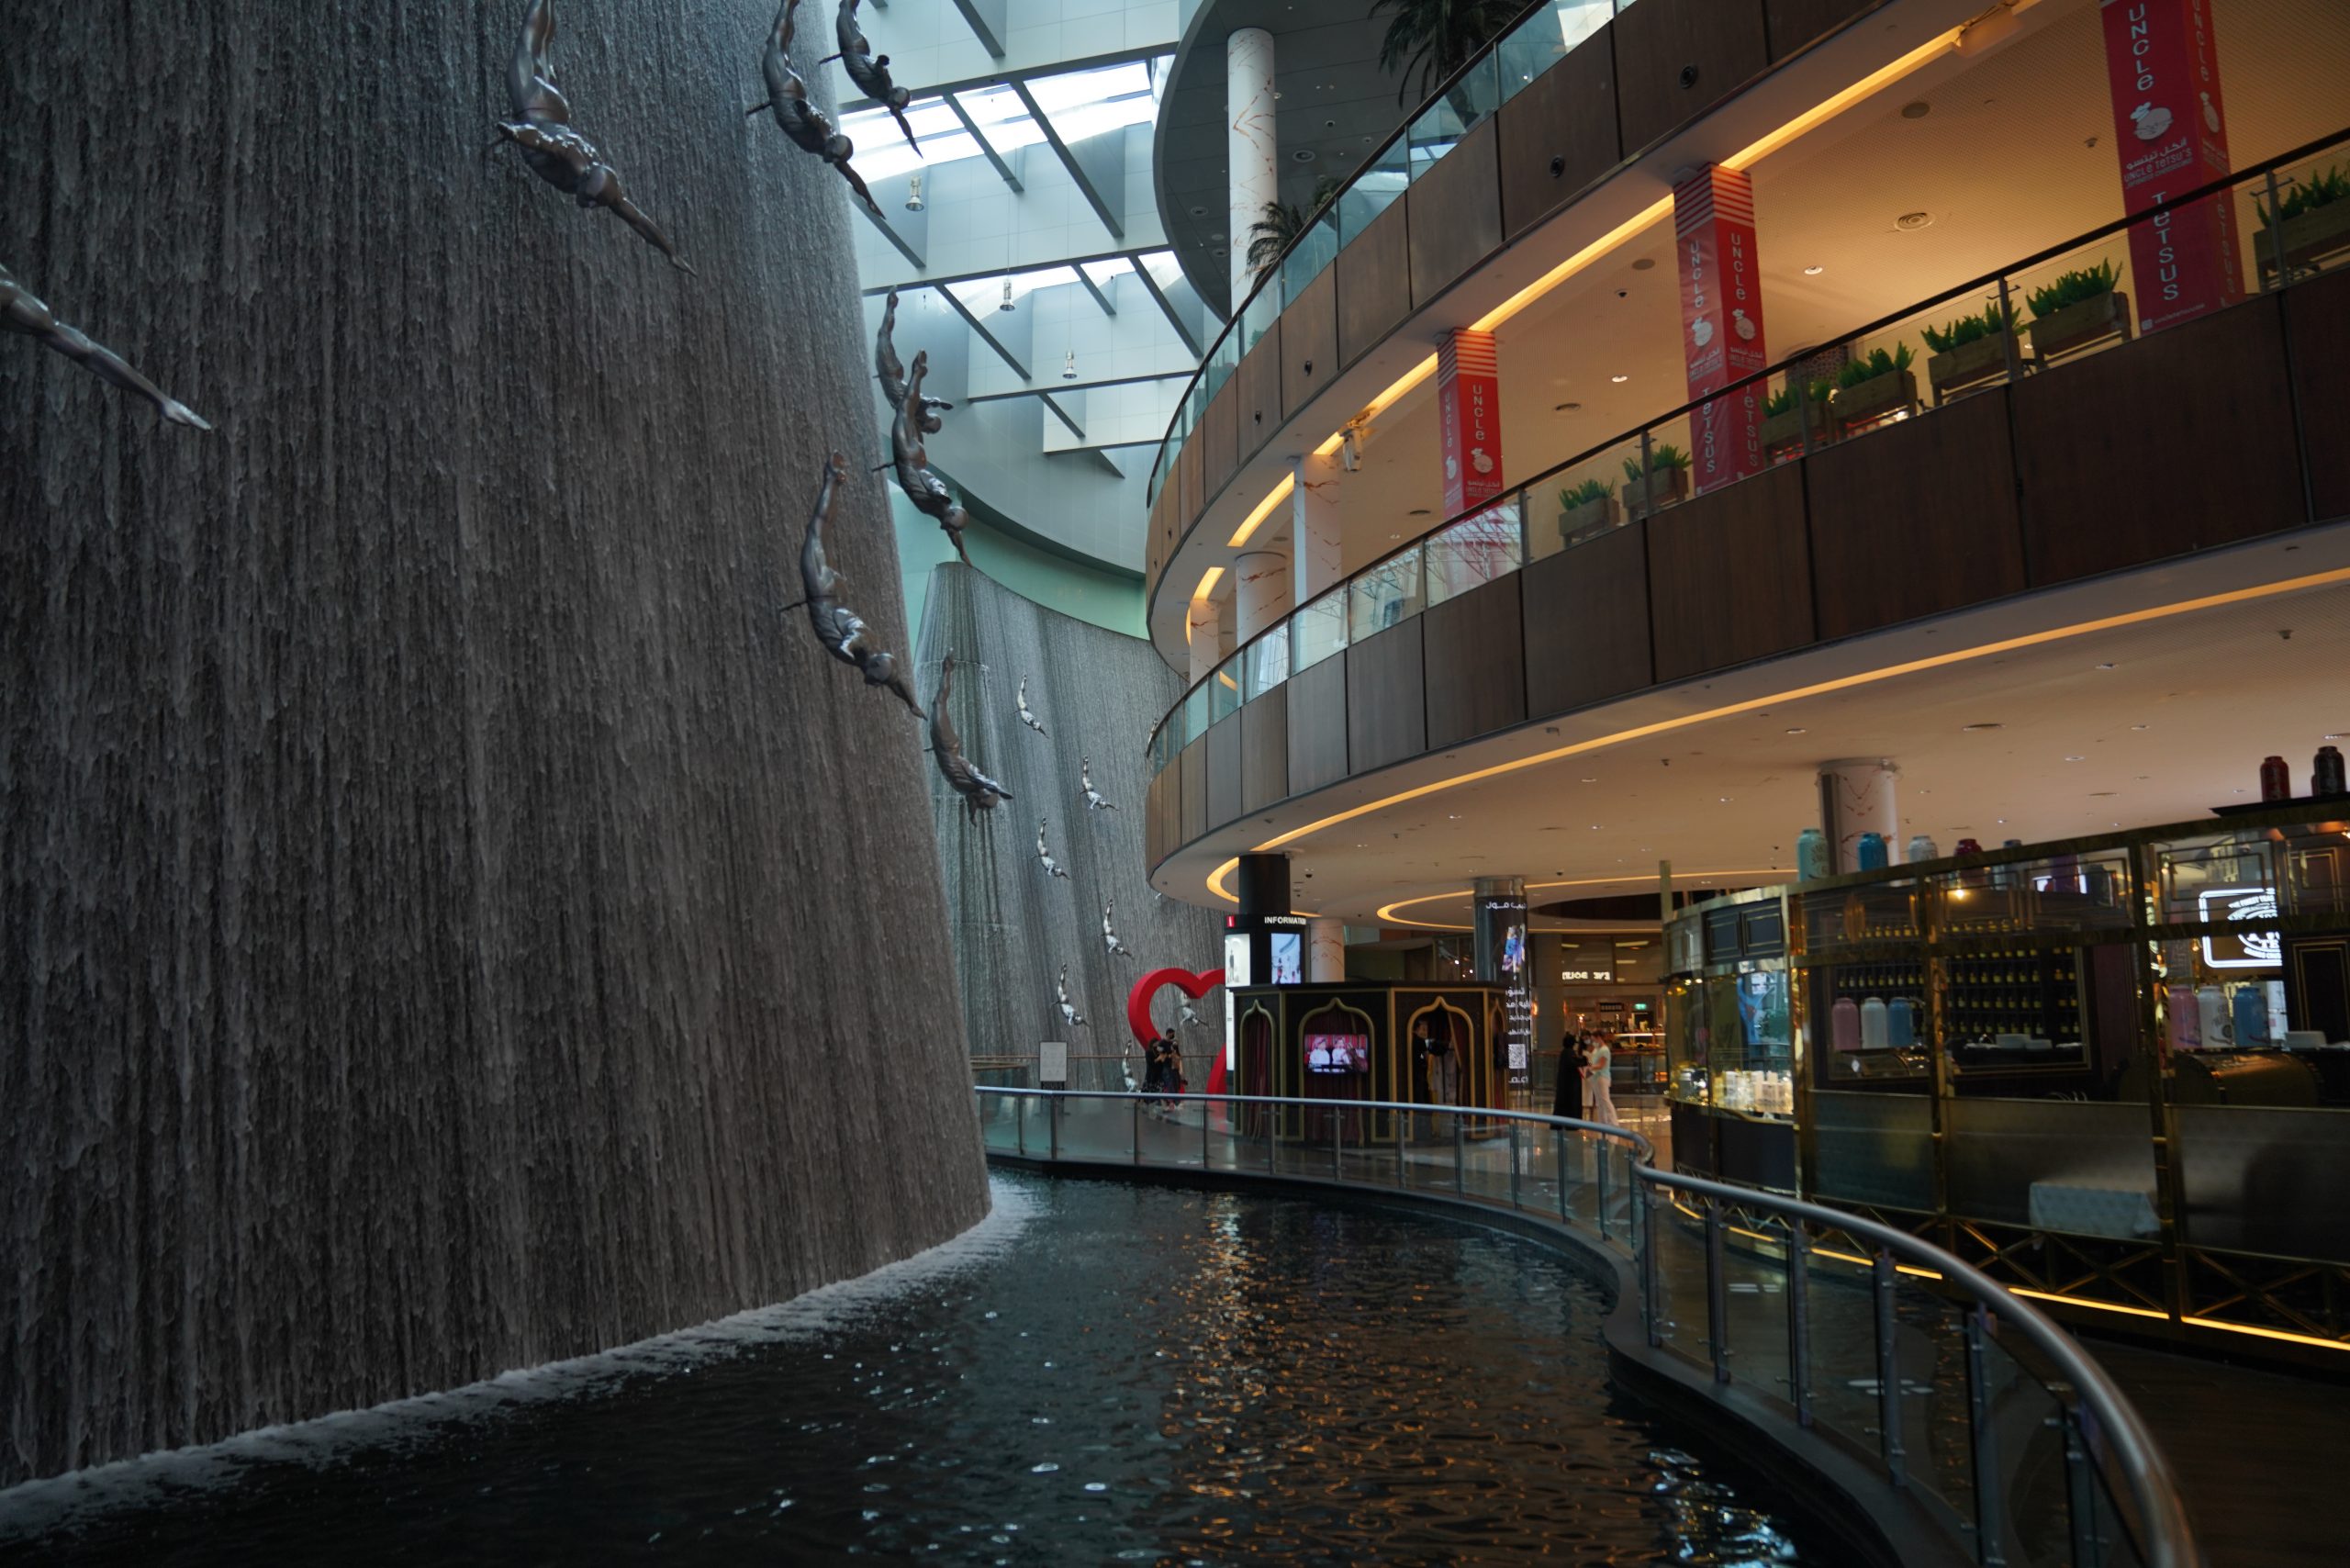 Waterfall in dubai mall